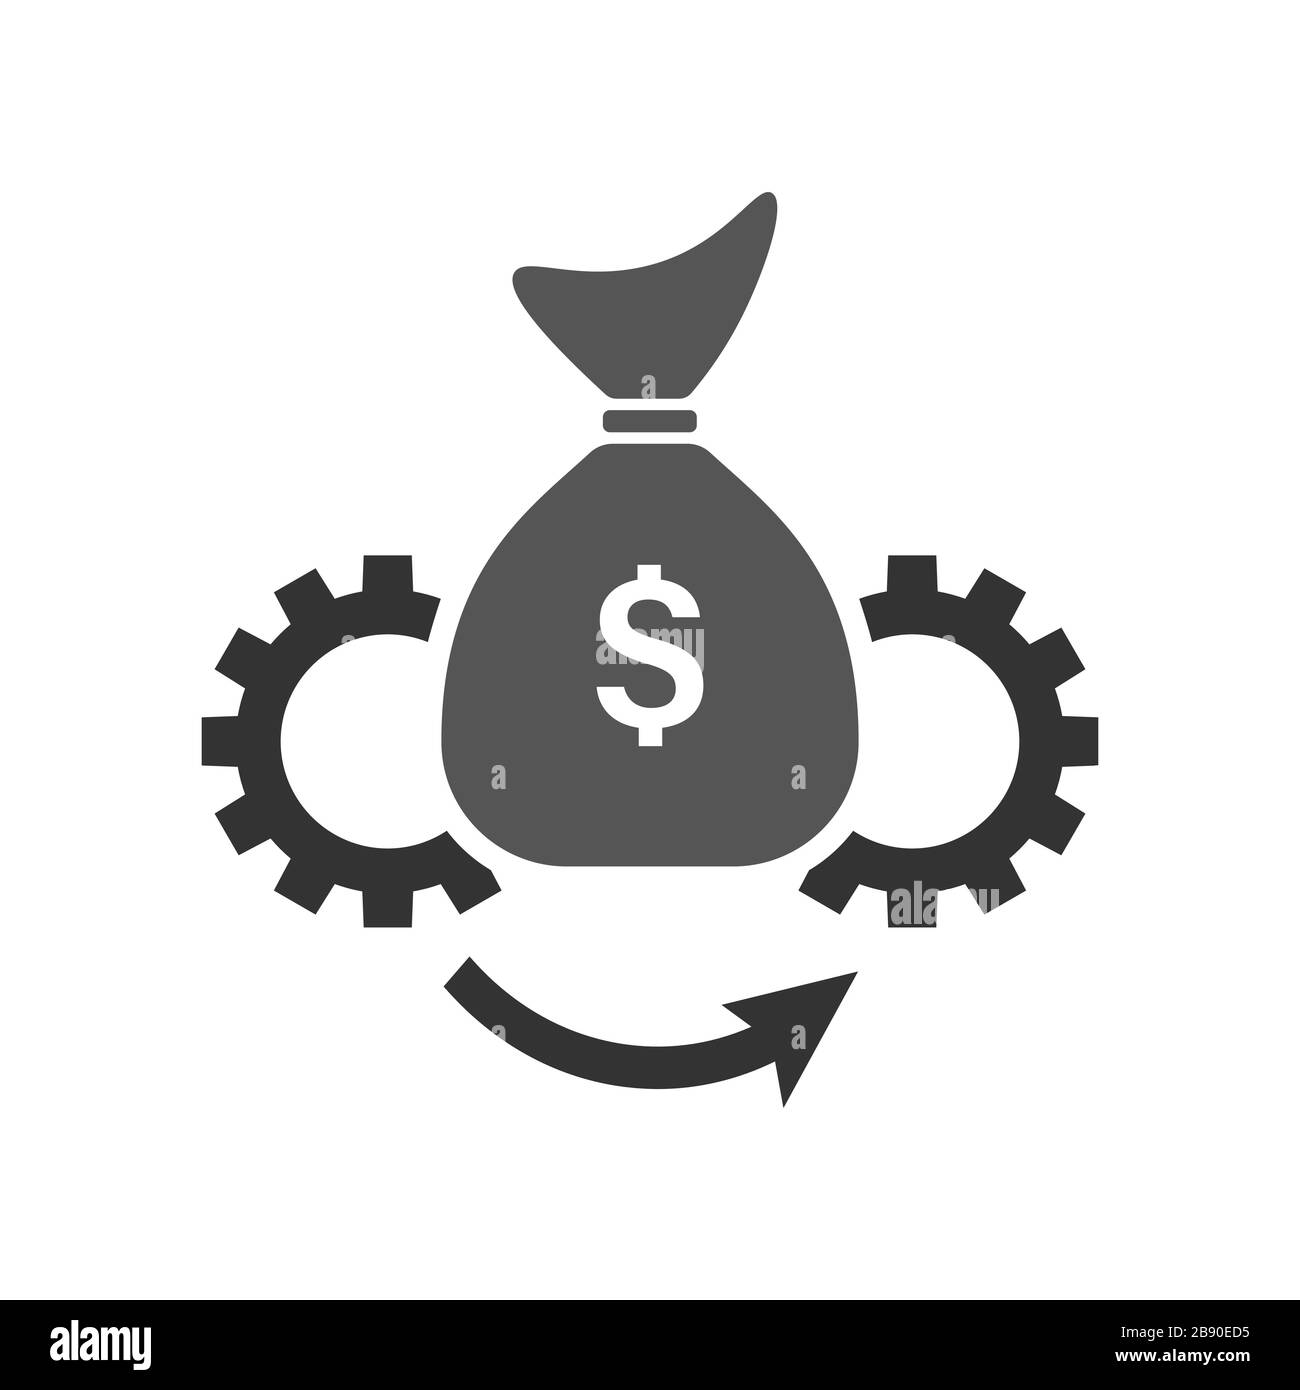 Illustrazione dell'icona del vettore Asset Management. Stile piatto. Simbolo, grafica vettoriale del logo. EPS 10. Illustrazione Vettoriale